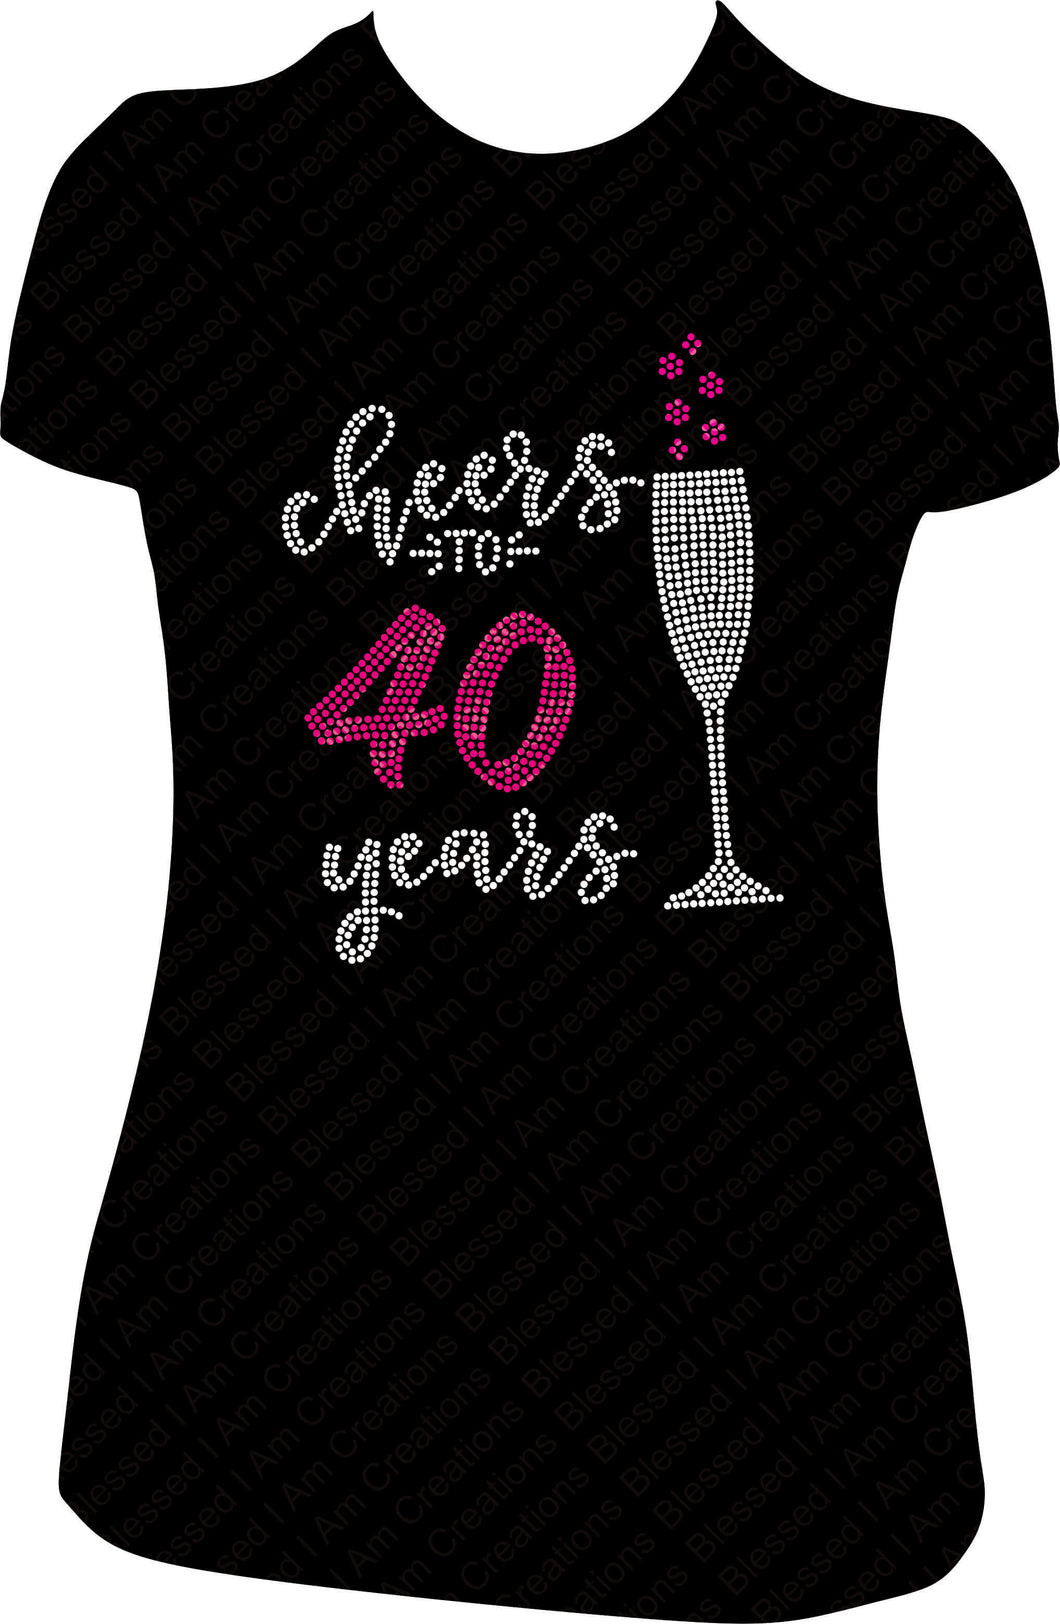 cheers to 40 years birthday shirt, birthday shirt, rhinestone shirt, bling shirt, 40th birthday shirt, 40 bling shirt